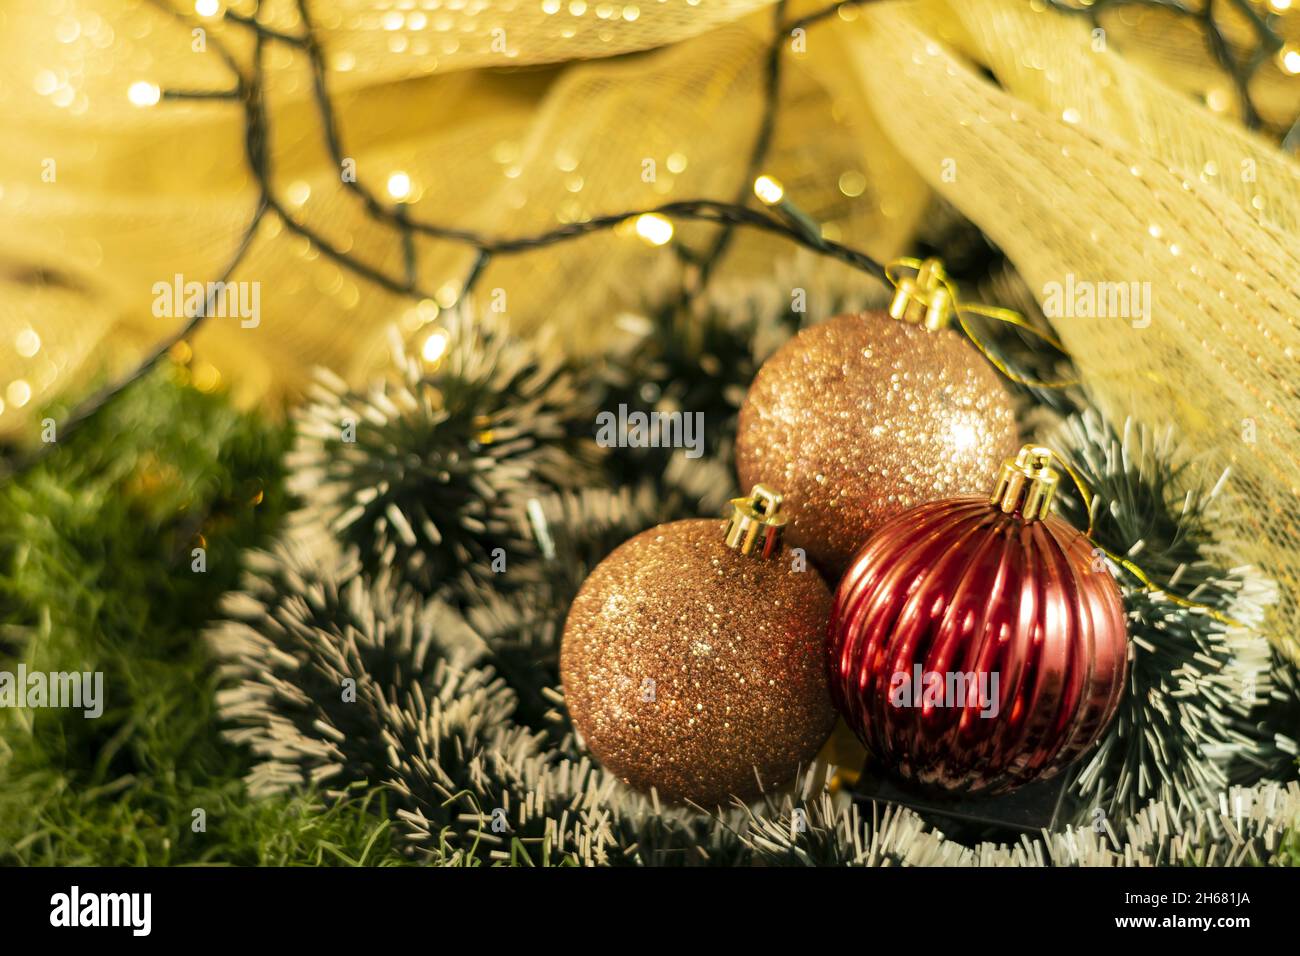 Bombillos navideños con luces Stockfoto